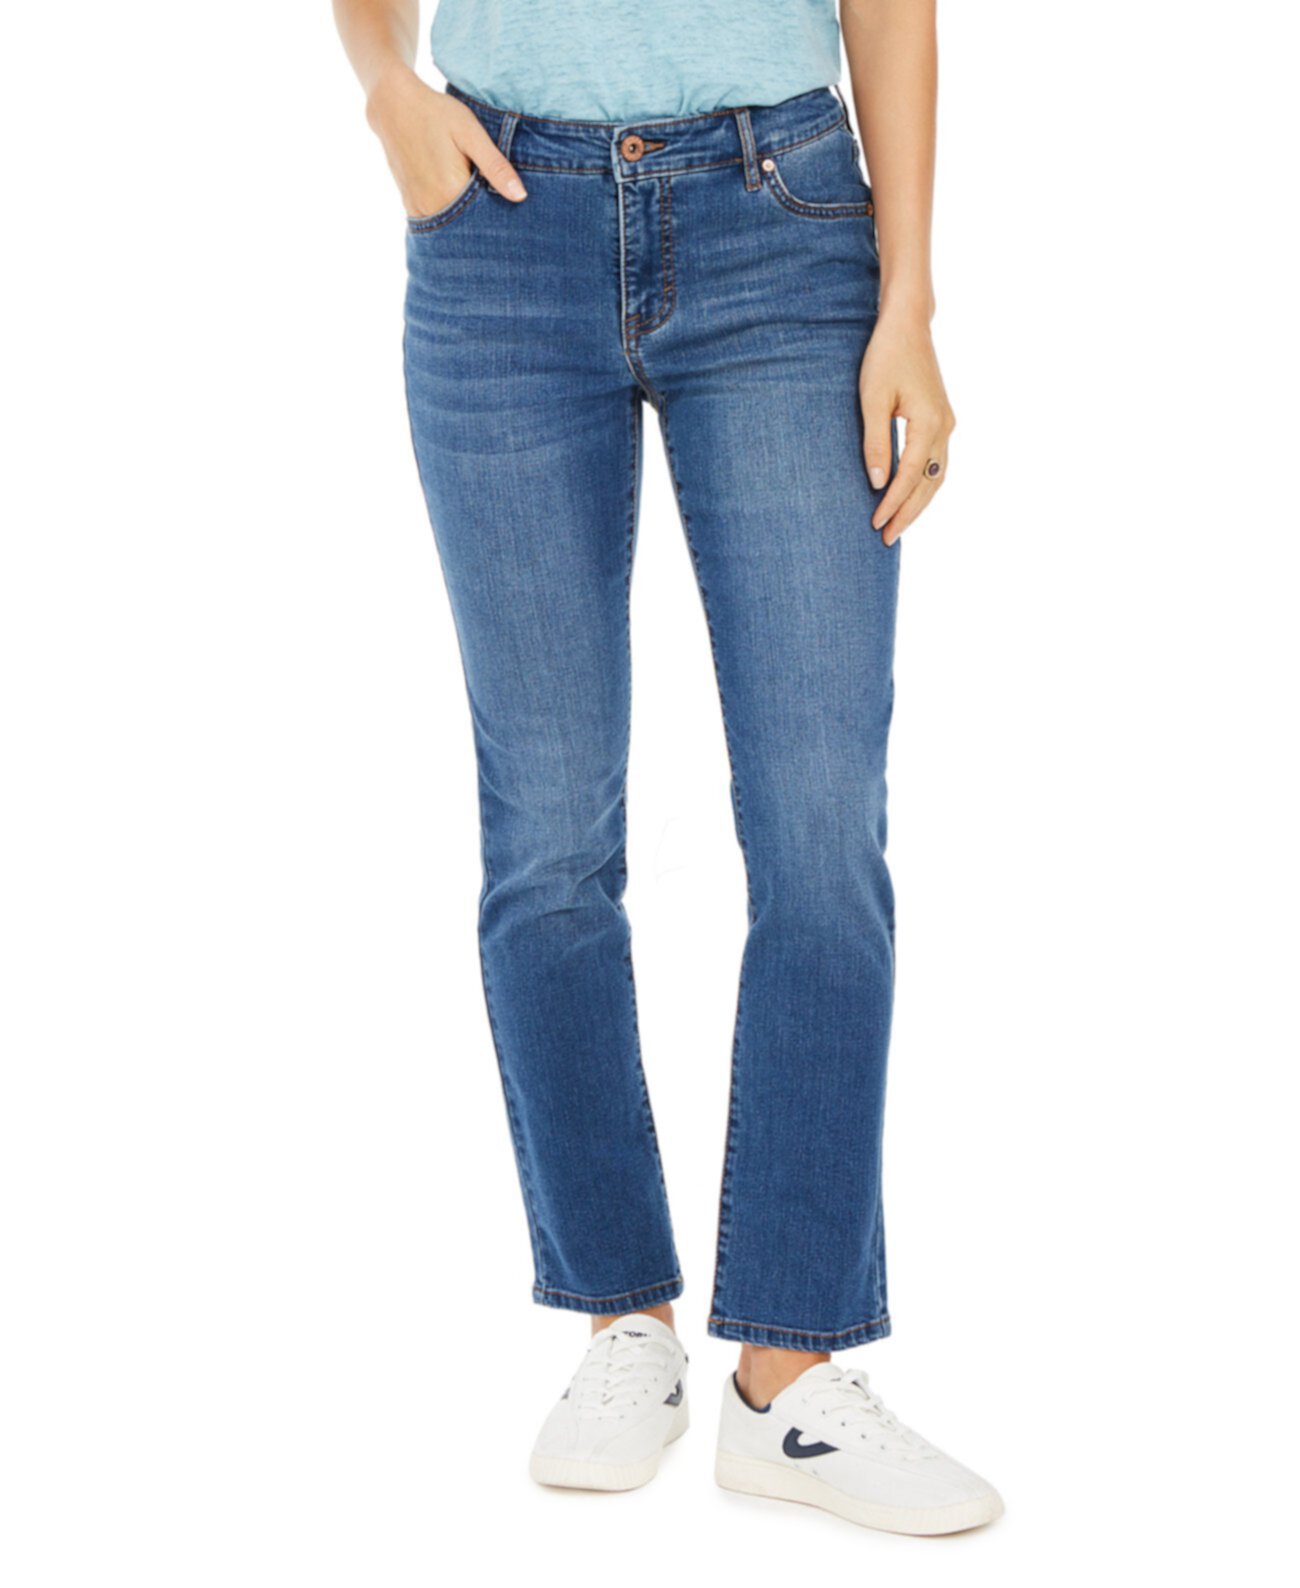 Современные прямые джинсы со средней посадкой, созданные для Macy's Style & Co